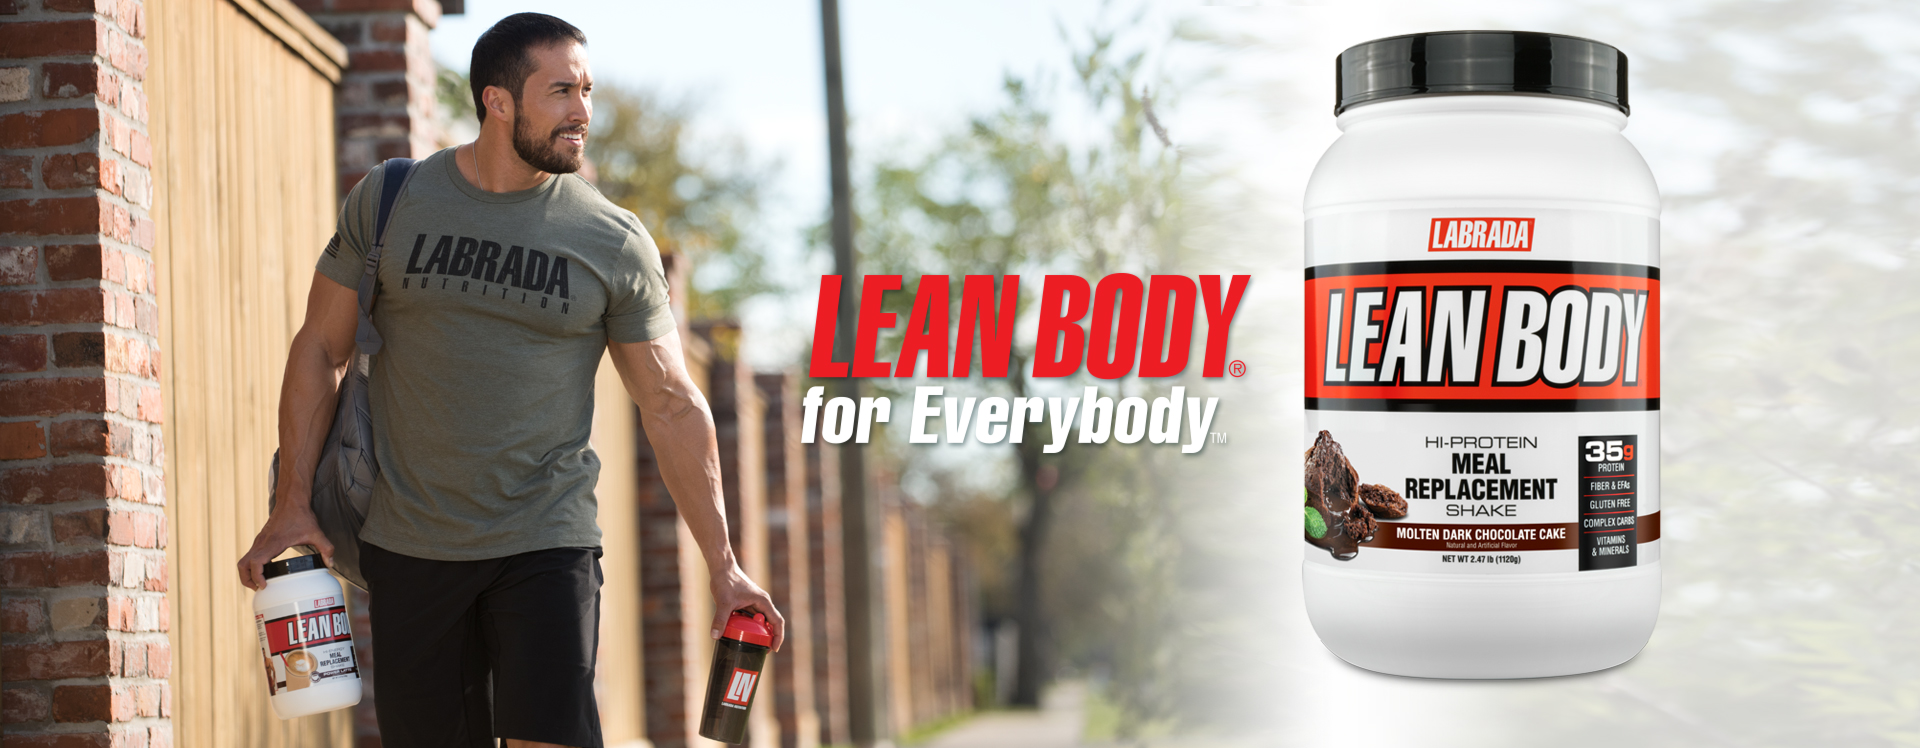 Lean Body - Giải pháp bổ sung dinh dưỡng hoàn chỉnh cho cơ thể mạnh mẽ